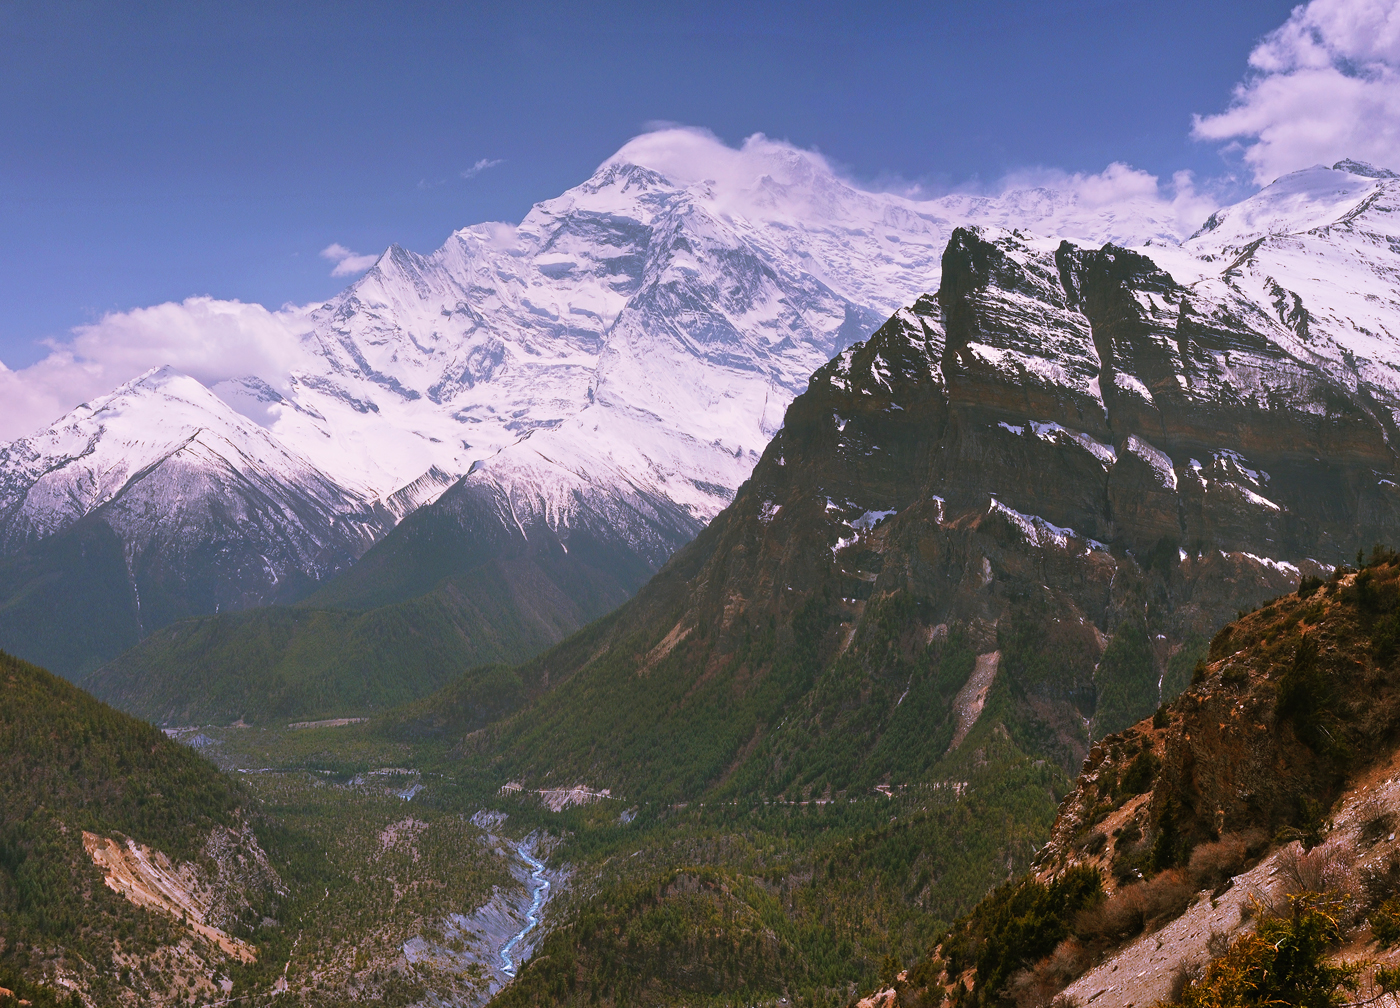 Г гималаи. Непал Гималаи. Индия горы Гималаи. Горный массив в Гималаях. Высокогорье Гималаев.